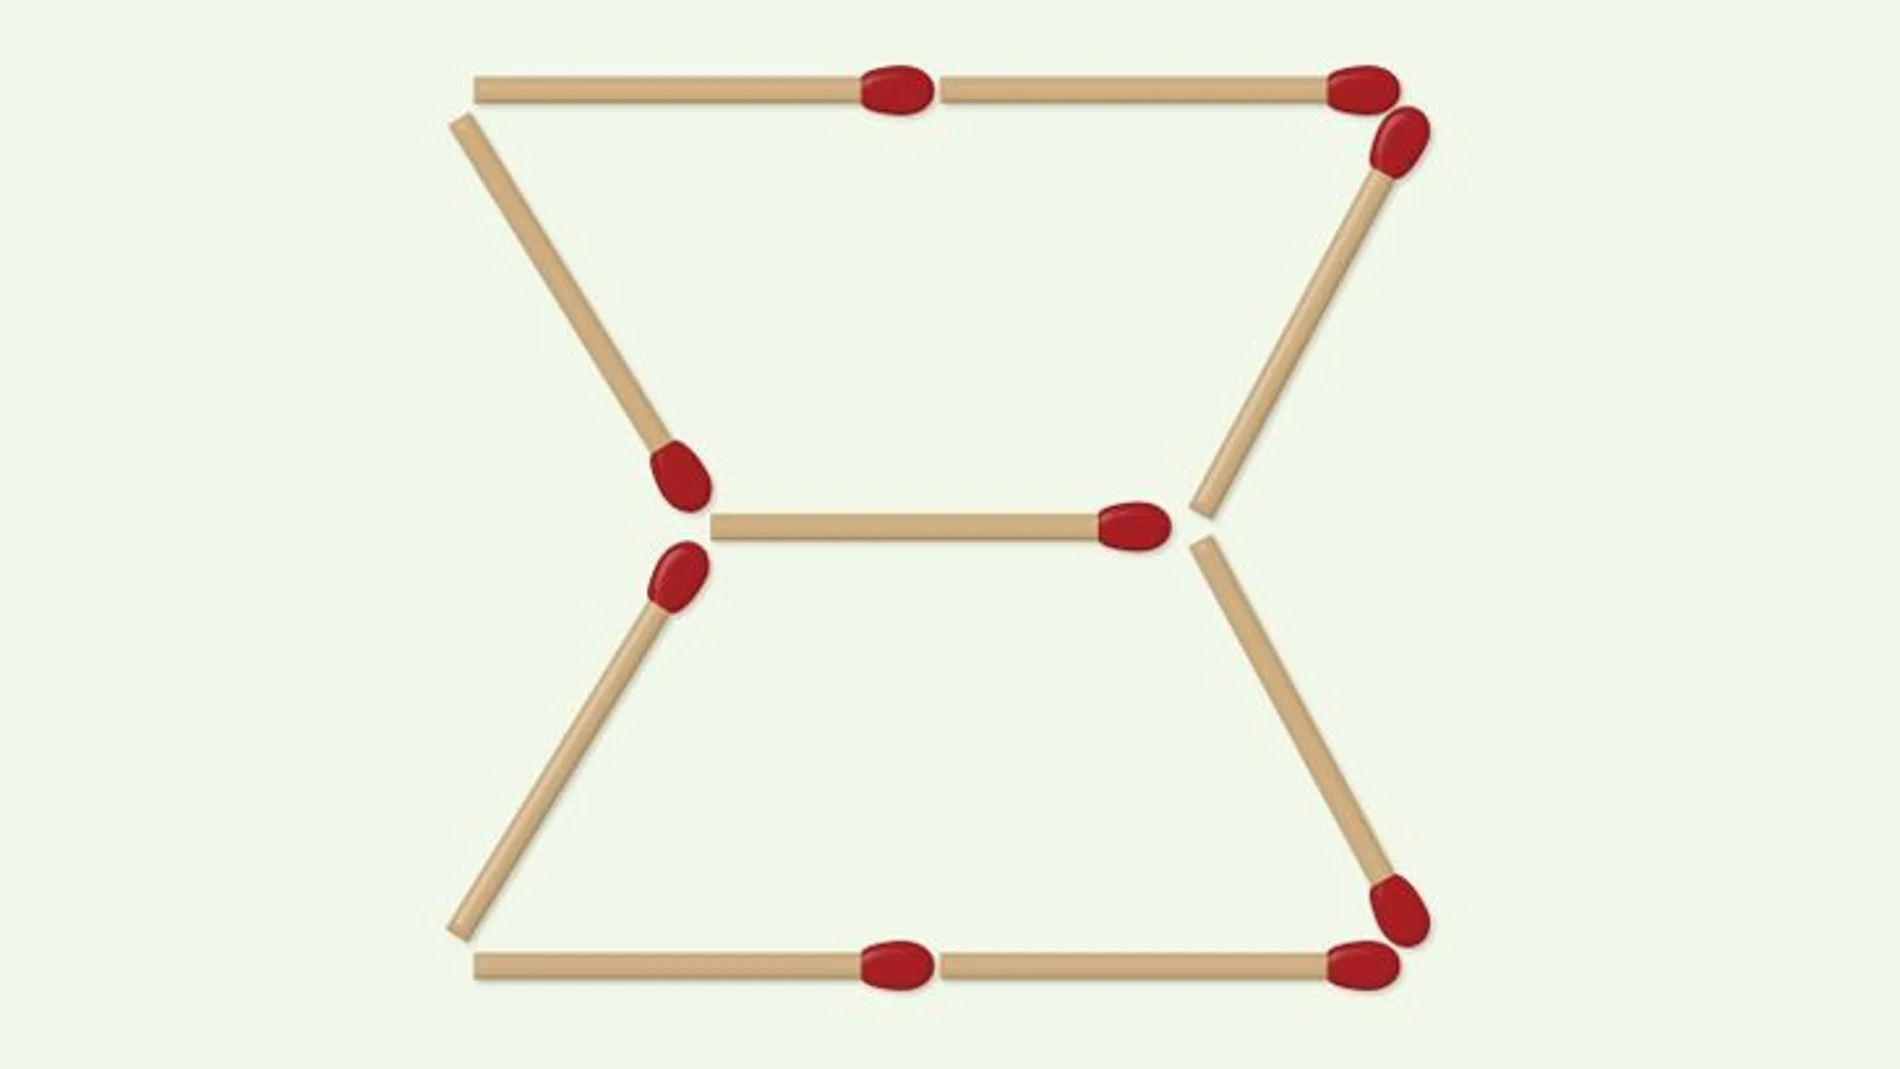 ¿Eres capaz de resolver el desafío? Sólo tienes que formar 3 triángulos moviendo dos cerillas